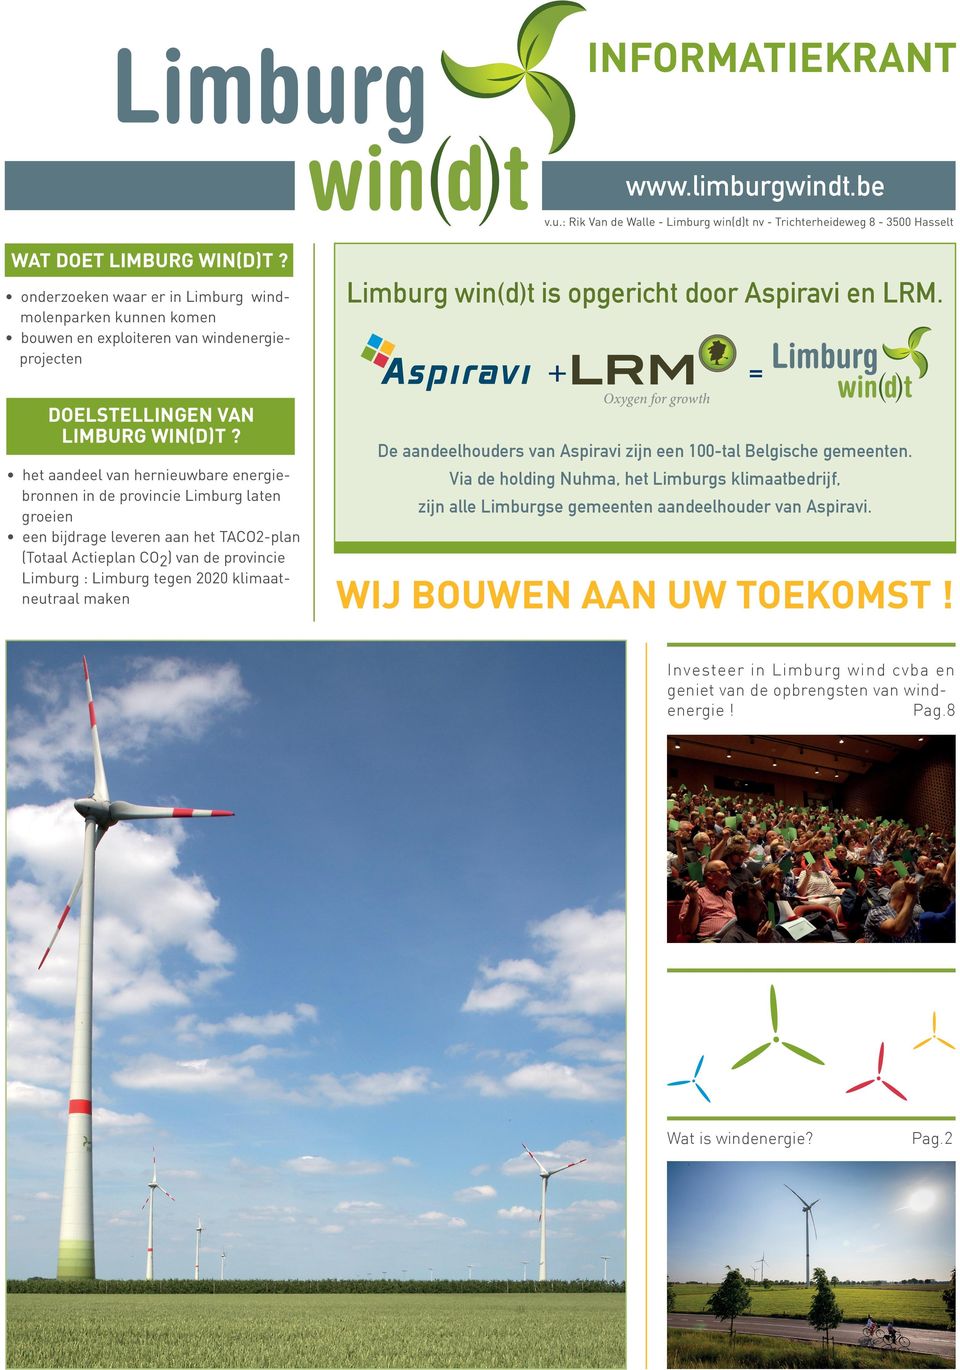 het aandeel van hernieuwbare energiebronnen in de provincie Limburg laten groeien een bijdrage leveren aan het TACO-plan (Totaal Actieplan CO) van de provincie Limburg : Limburg tegen 00